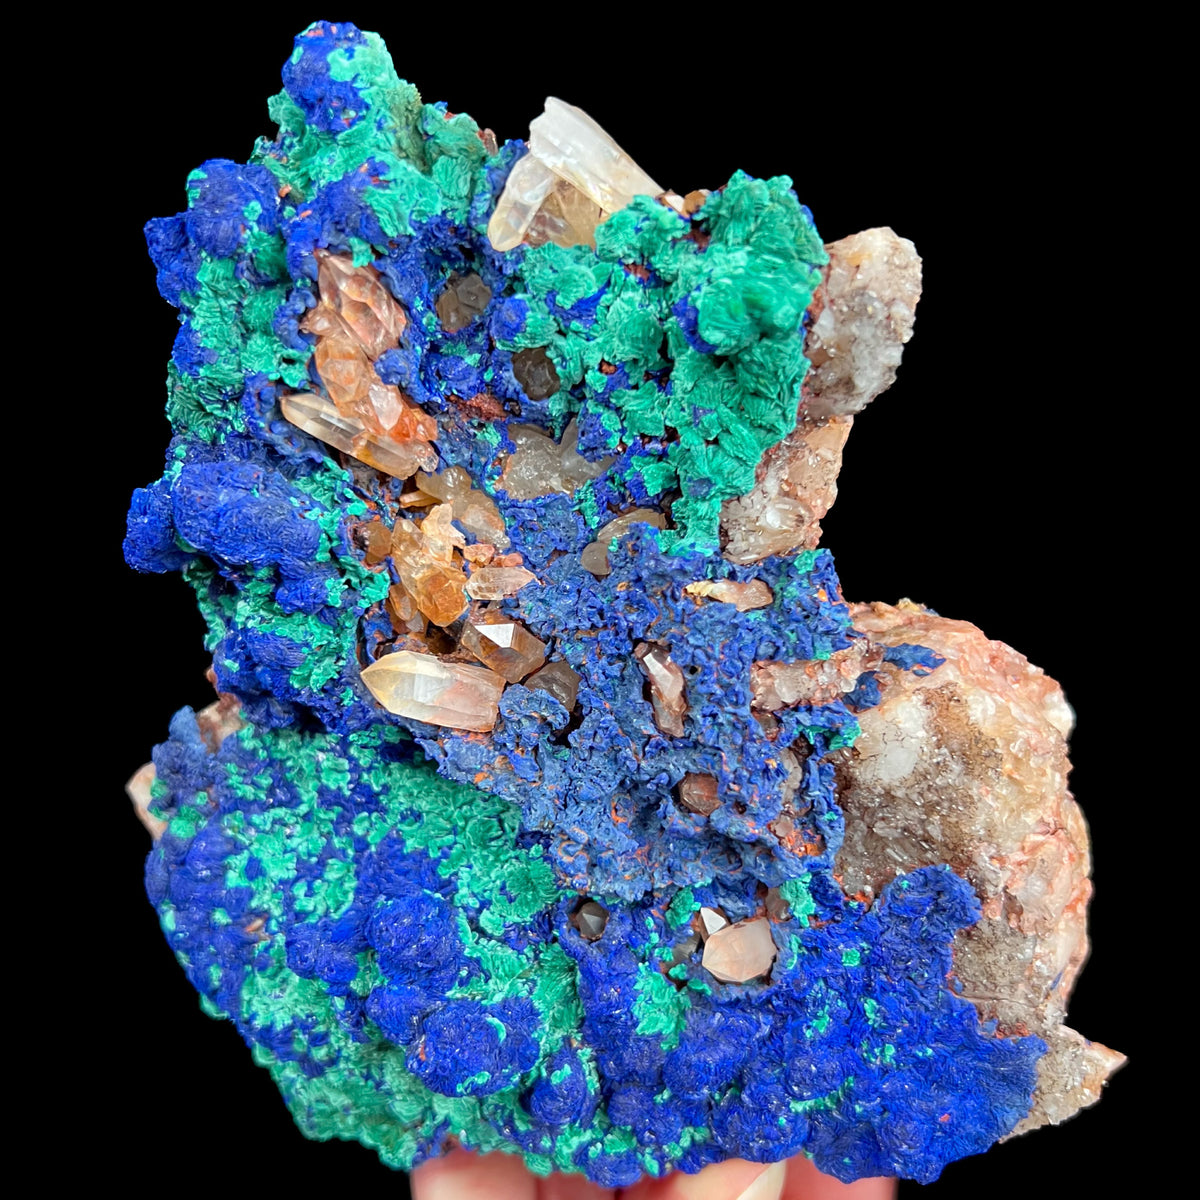 Large Azurite, Malachite, and Quartz Mineral Specimen from Morocco